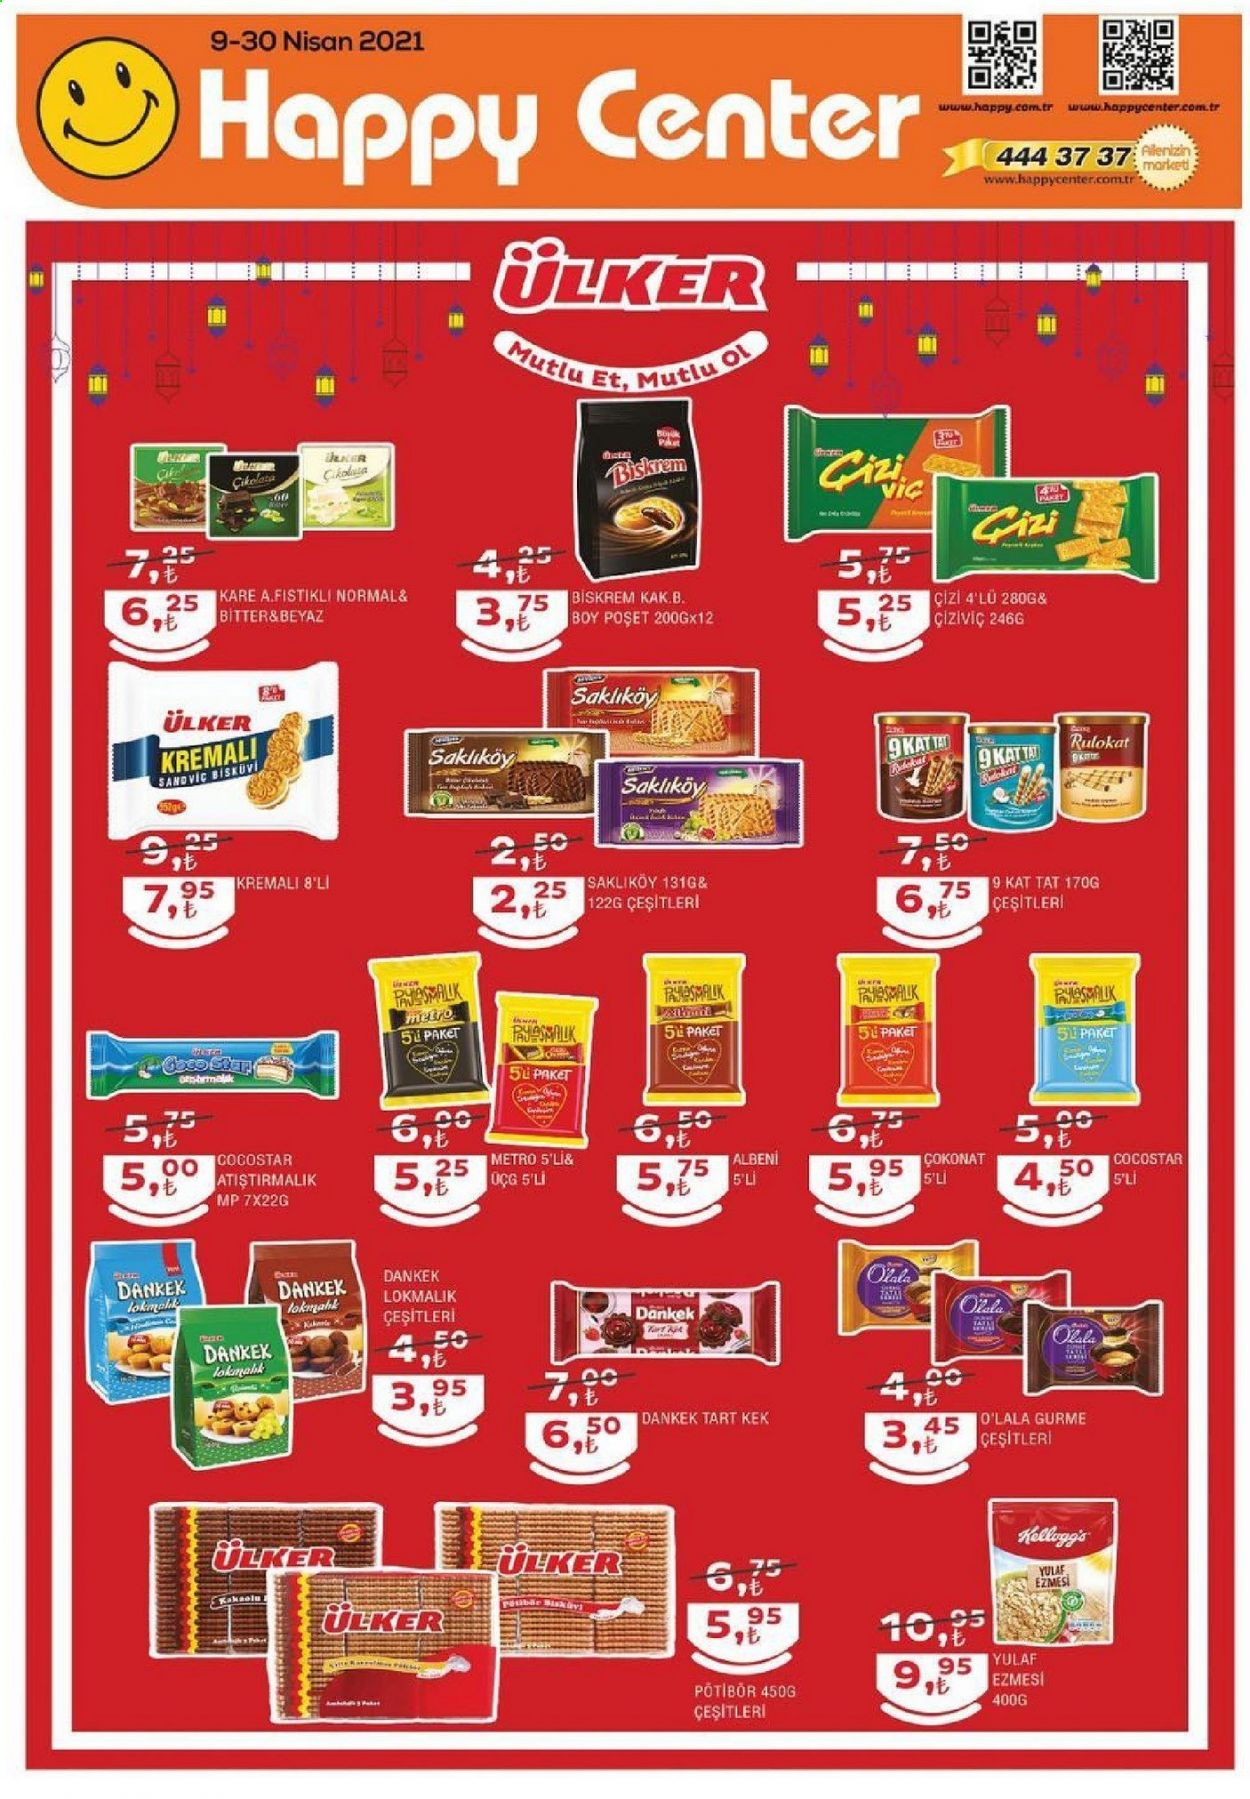 thumbnail - Happy Center aktüel ürünler, broşür  - 4.9.2021 - 4.30.2021 - Satıştaki ürünler - kek, çikolata, Ülker, bisküvi, Kellogg's. Sayfa 1.